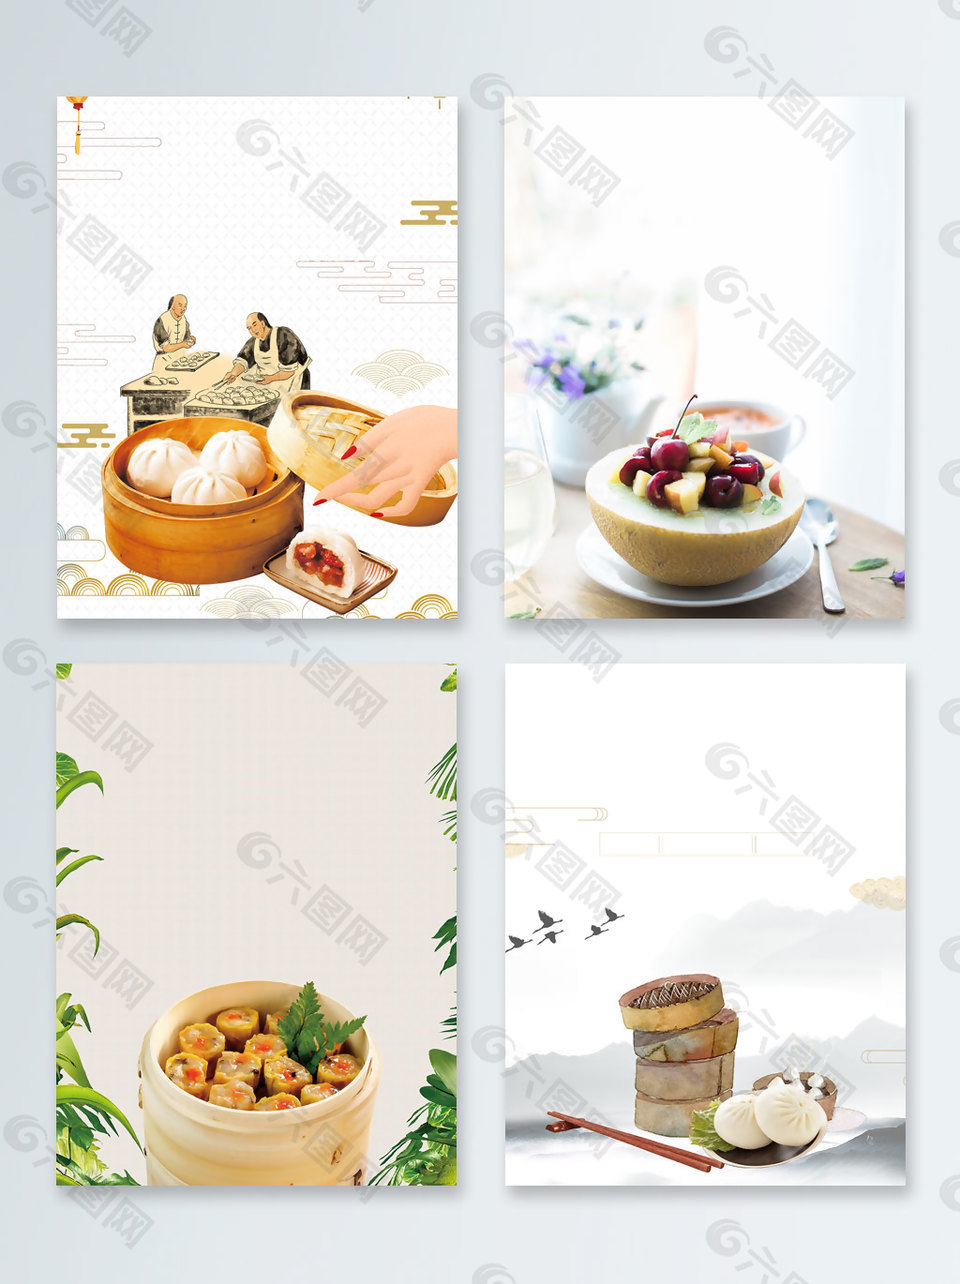 早餐主食包子中国风广告背景图